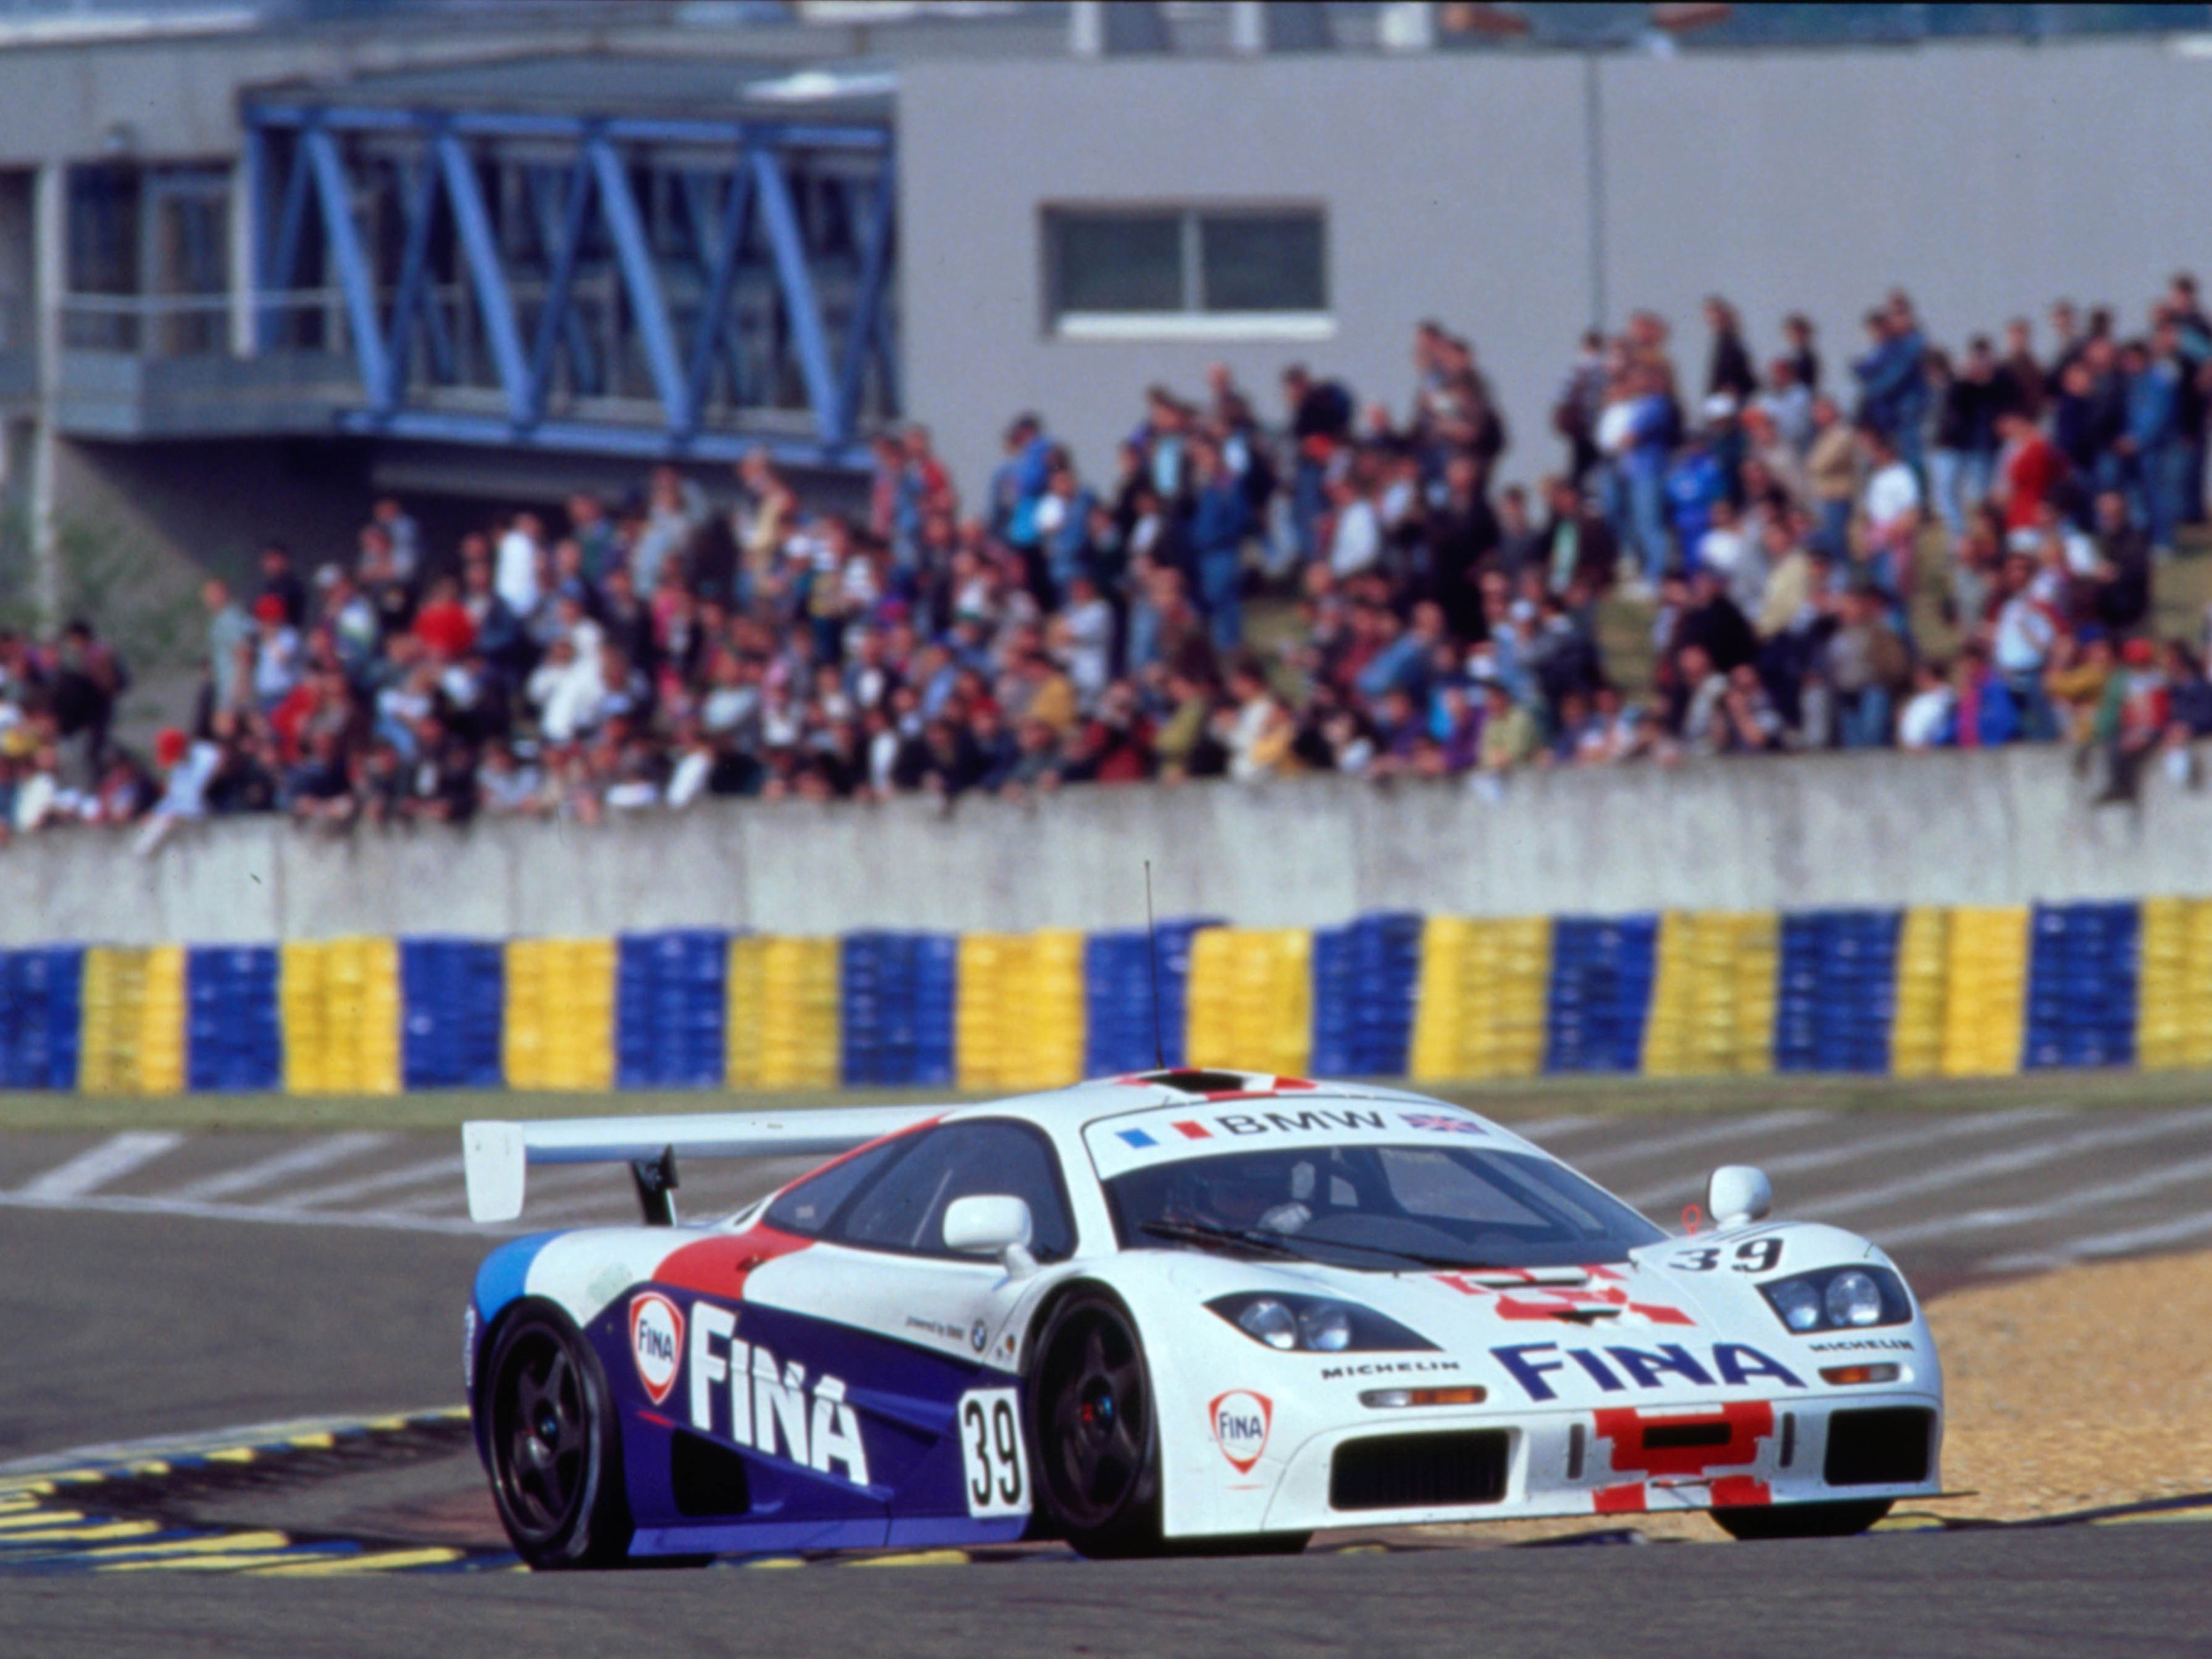 1996-McLarenF1LeMans.jpg